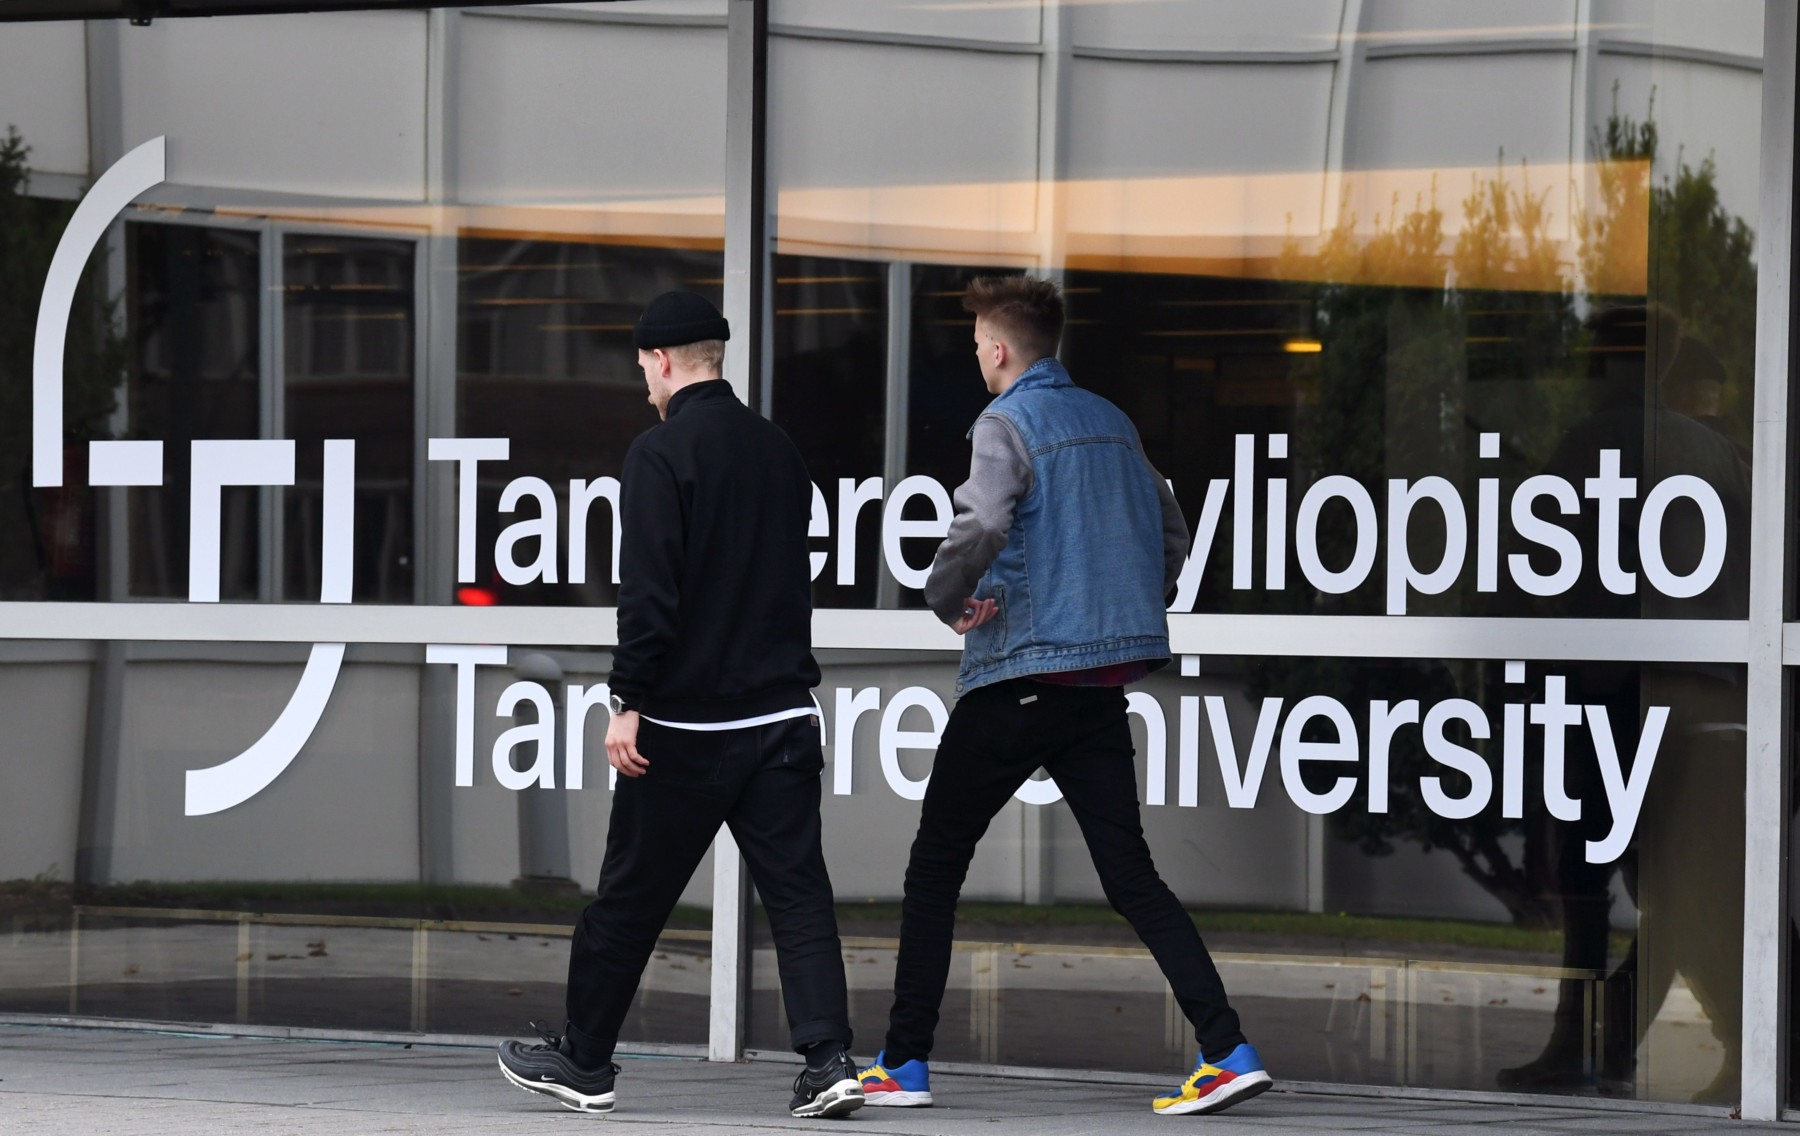 Dos jóvenes pasan junto a un cartel de la Universidad de Tampere.